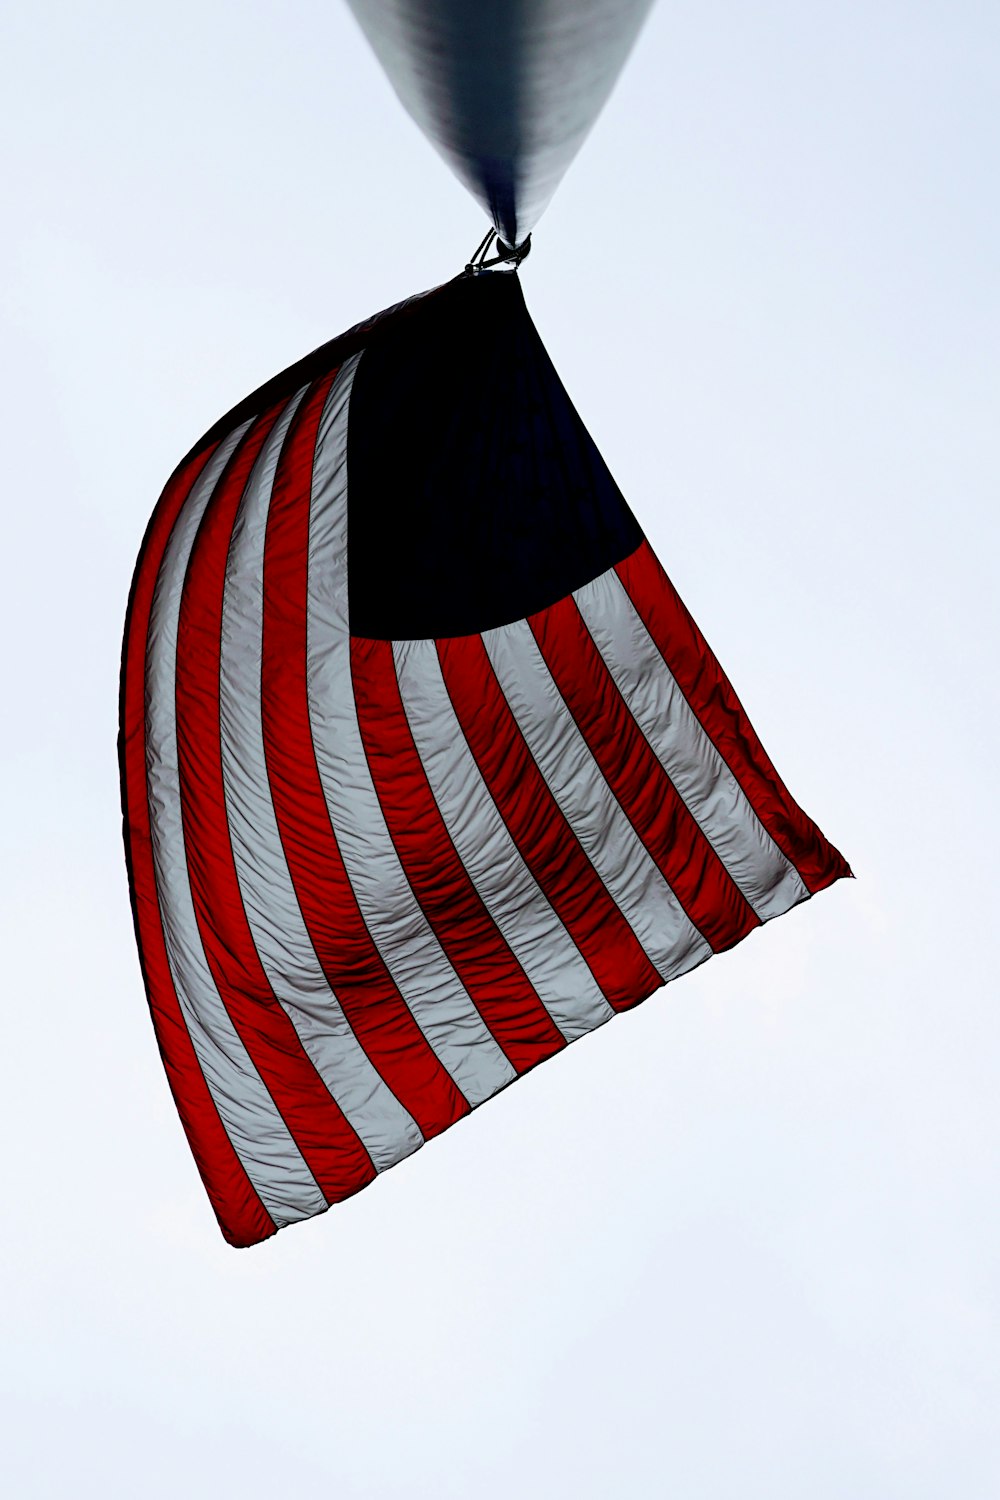 Flagge der Vereinigten Staaten von Amerika auf schwarzem Metallpfosten während des Tages